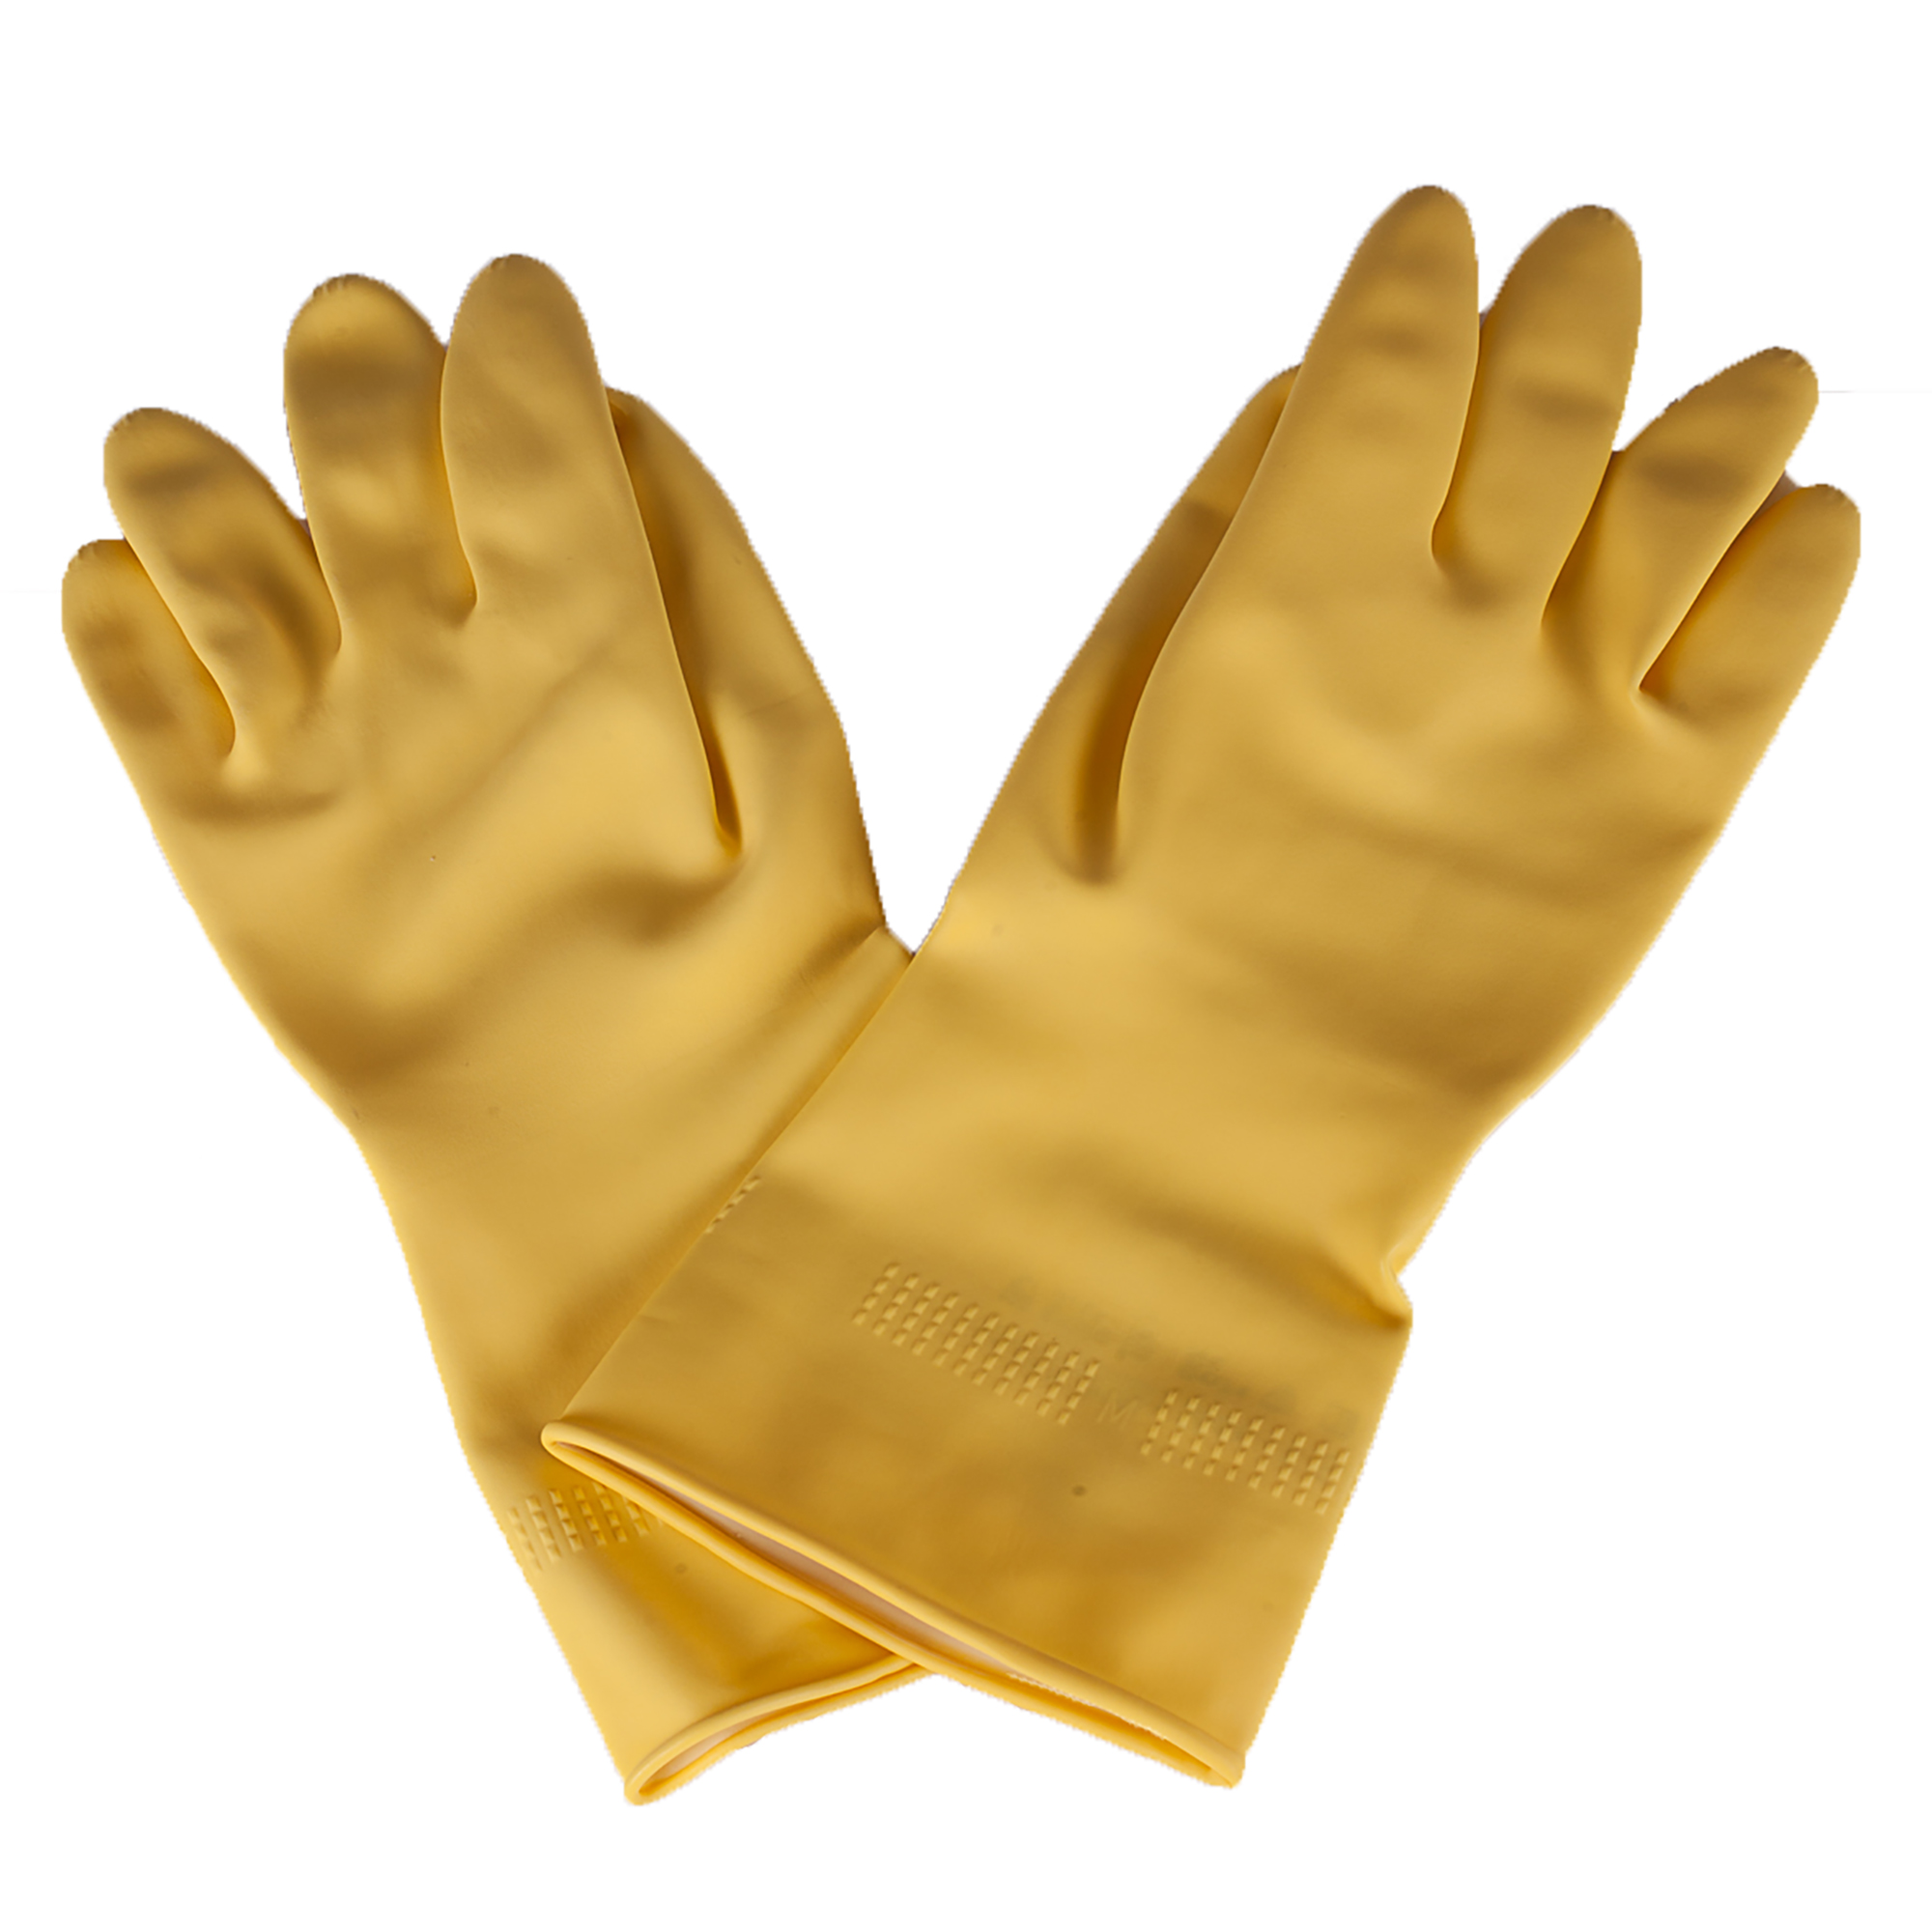 Marigold glove holder